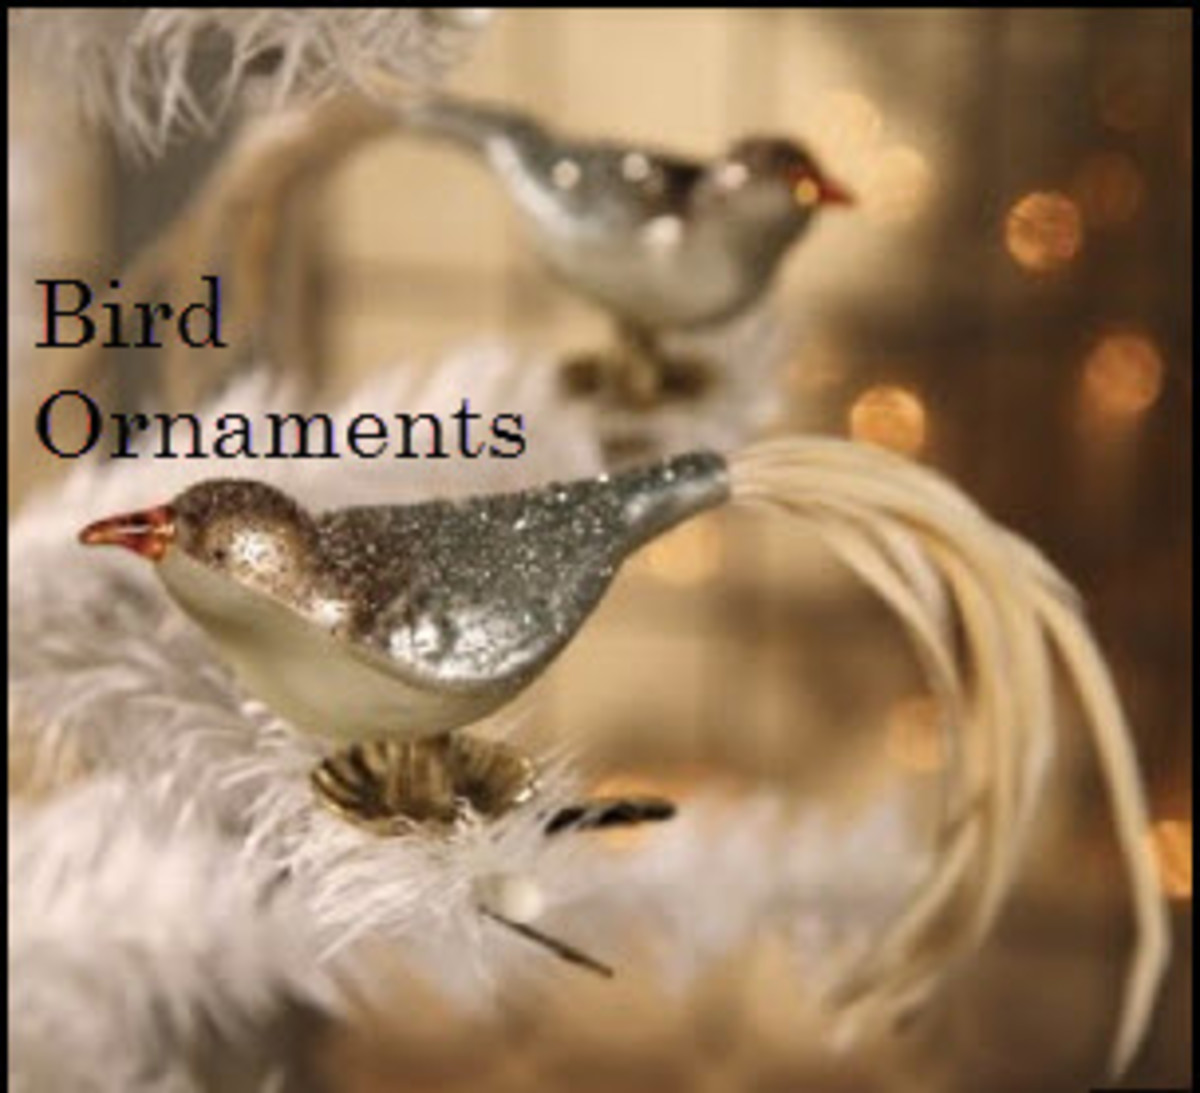 Clip-On Bird Ornaments for Christmas Decor